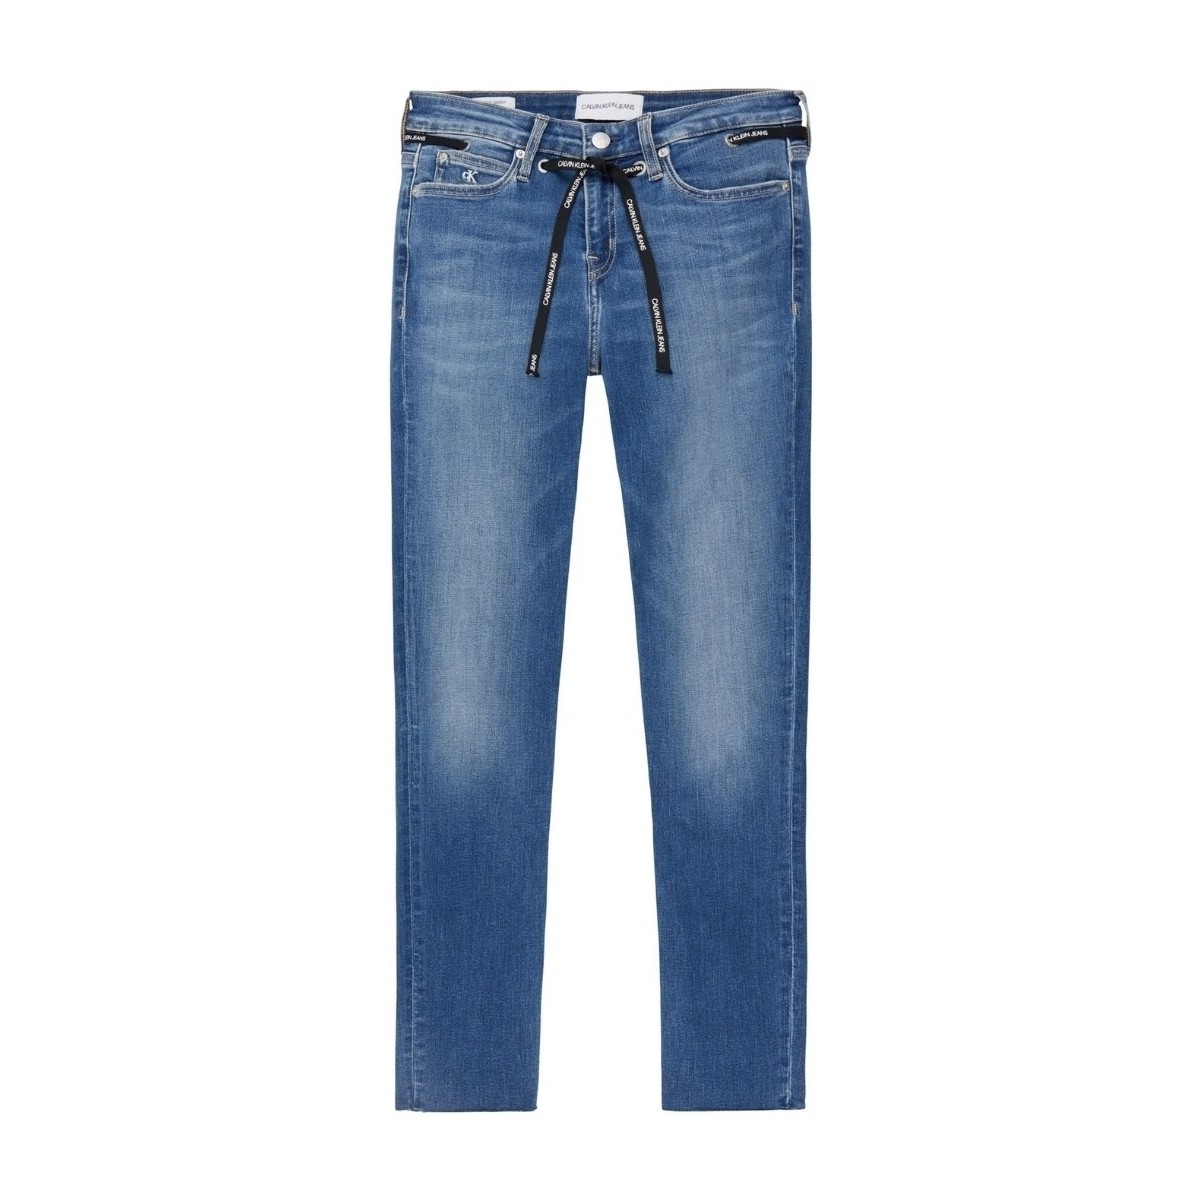 Vêtements Femme Maillots / Shorts de bain Calvin Klein Jeans Jean  Ref 53667 1A4 Bleu